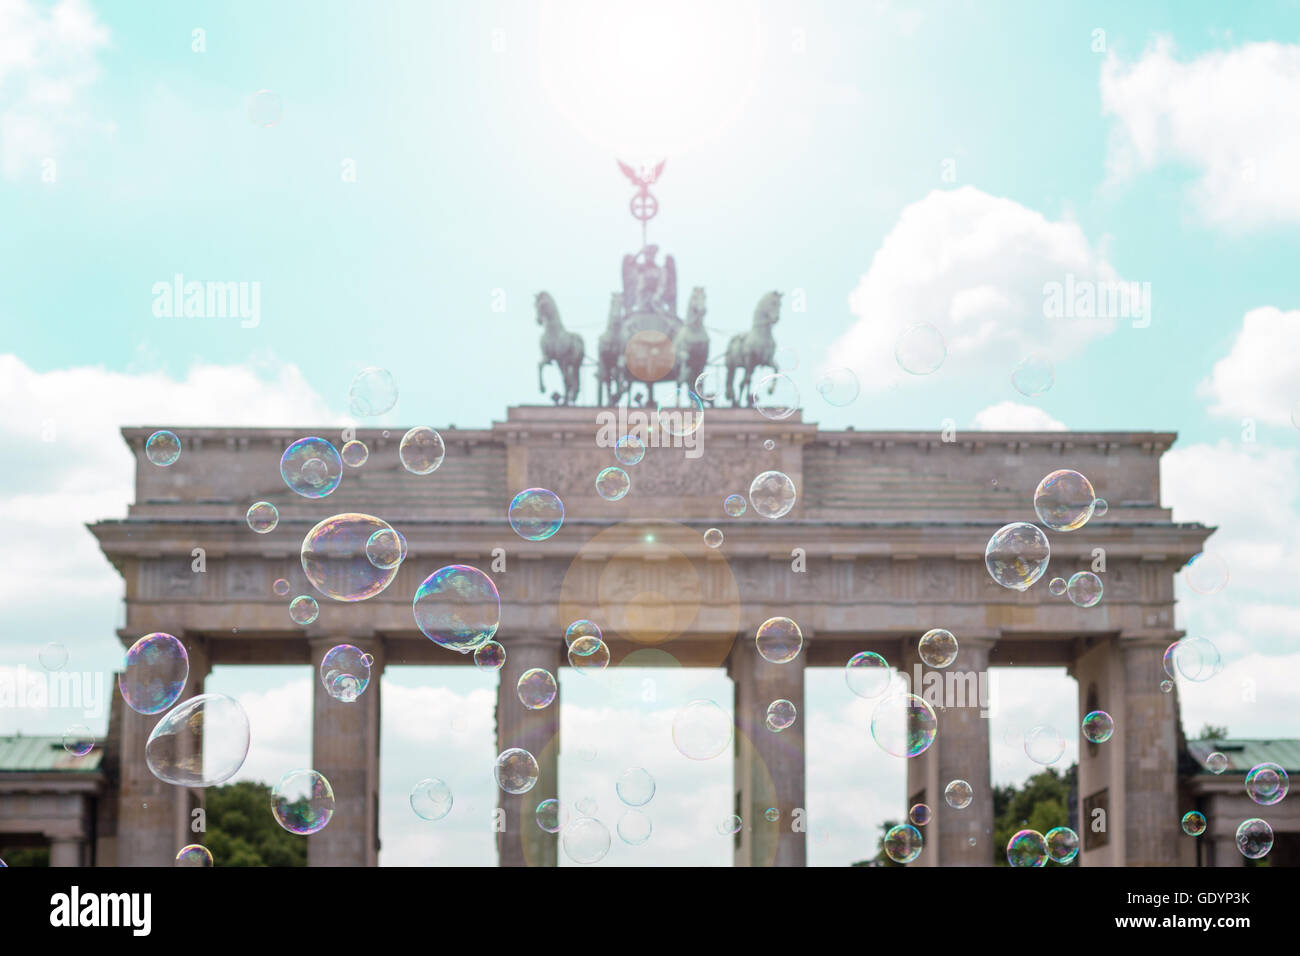 Symbole de Berlin, Porte de Brandebourg (Brandenburger Tor) derrière les bulles de savon Banque D'Images